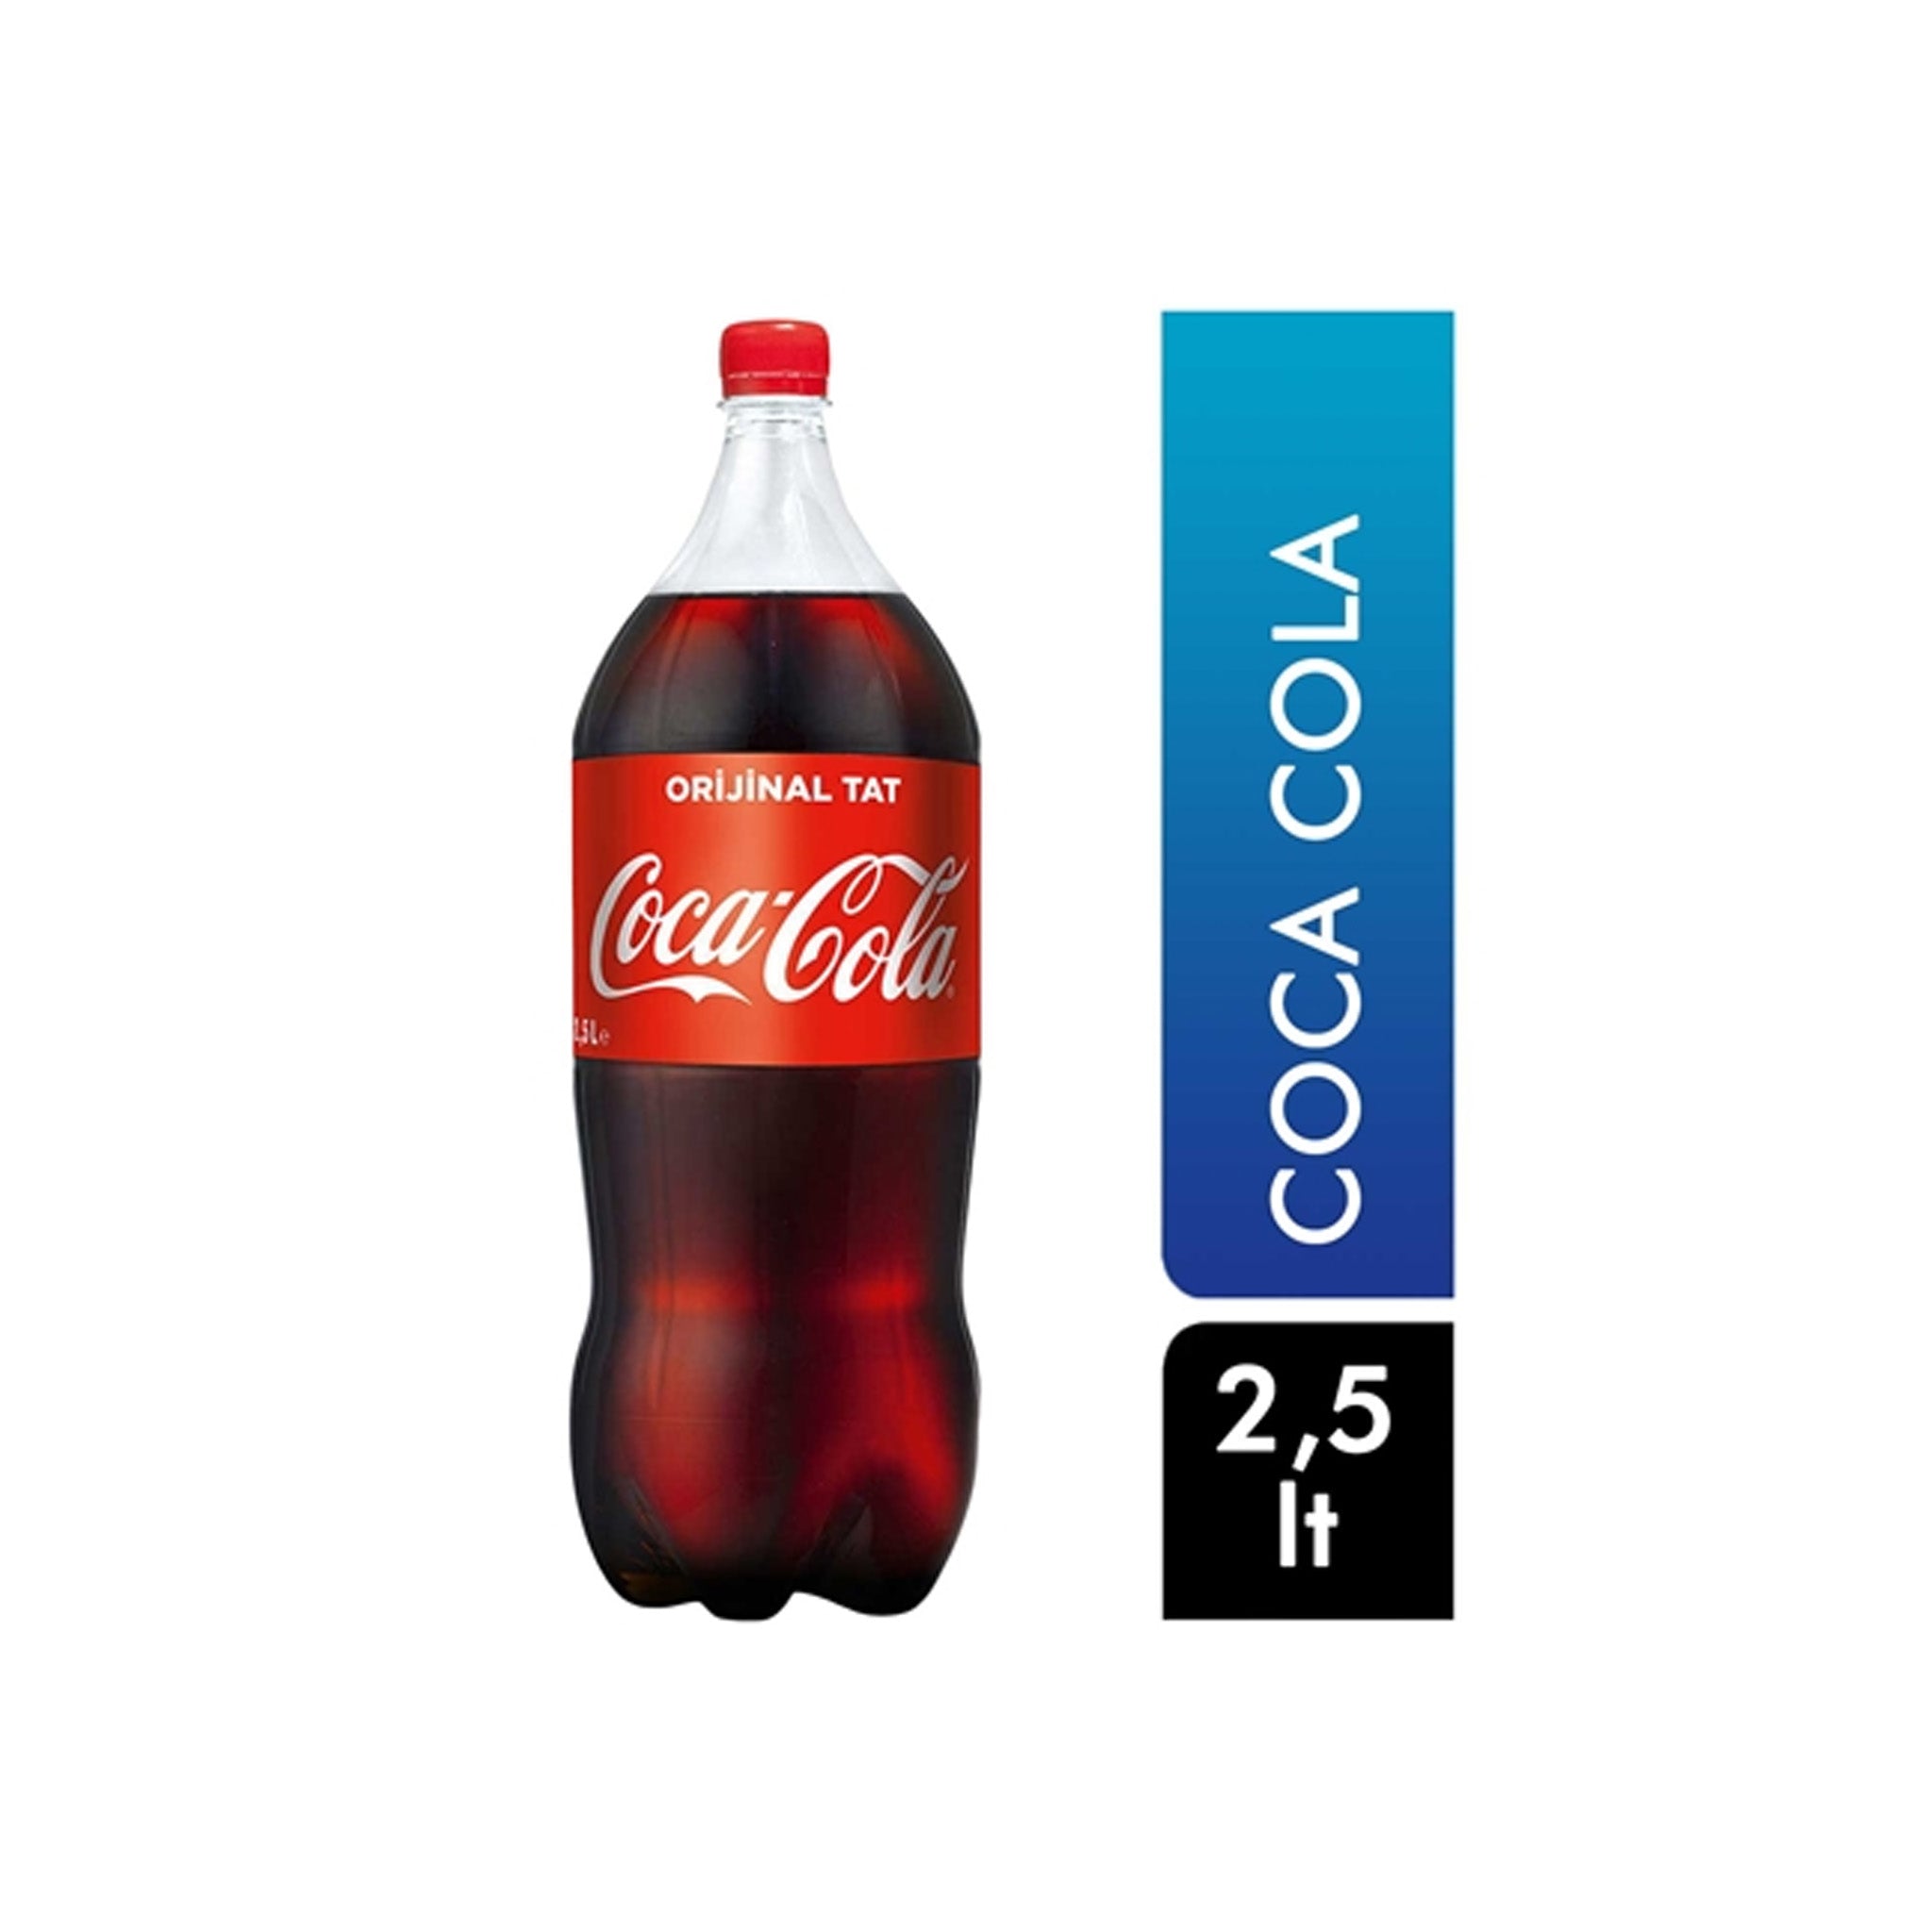 Coca Cola Original Tat 2.5L